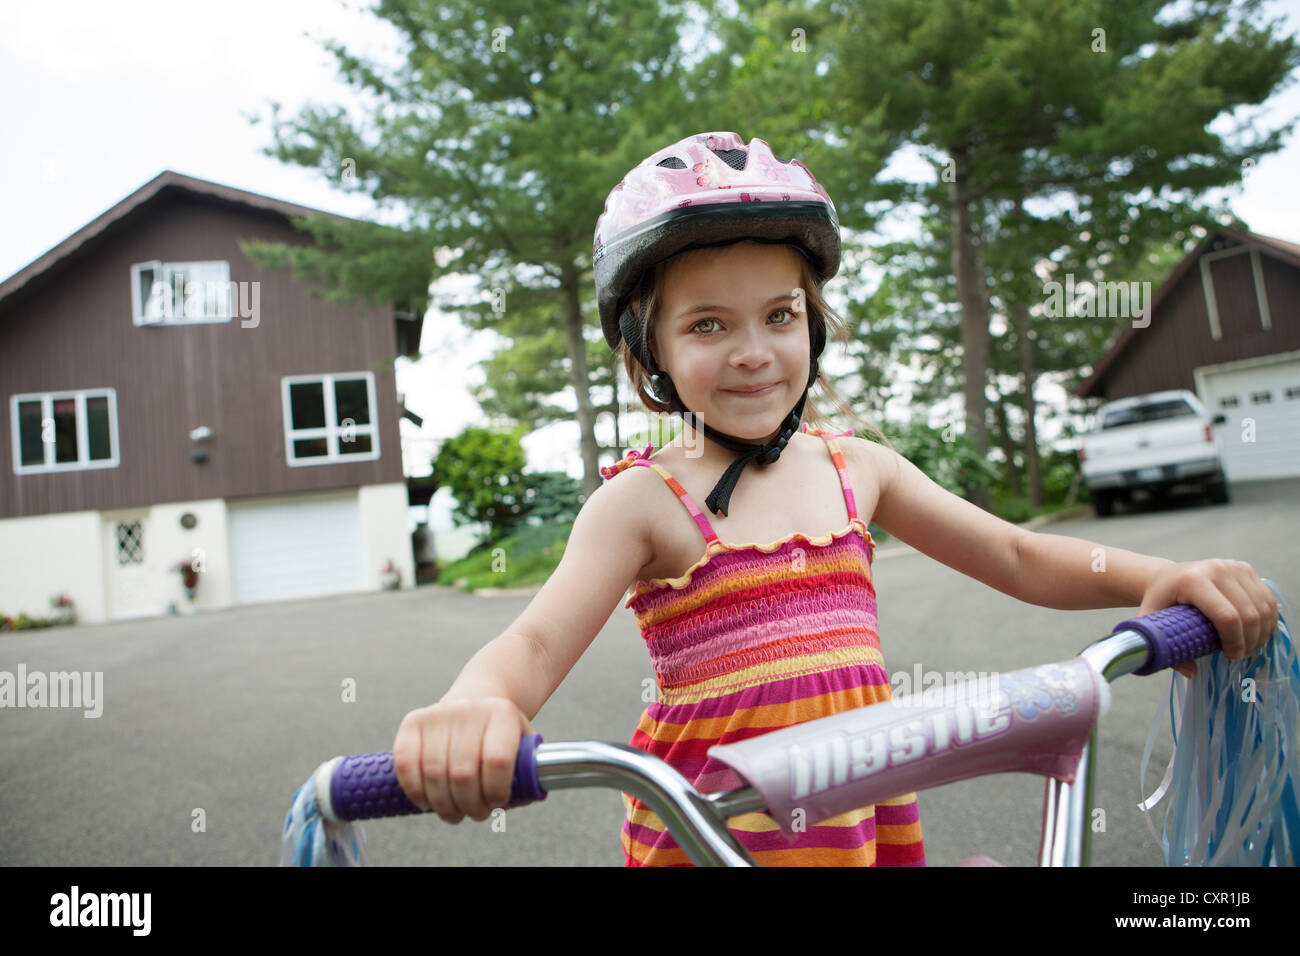 Girl on bicycle Stock Photo